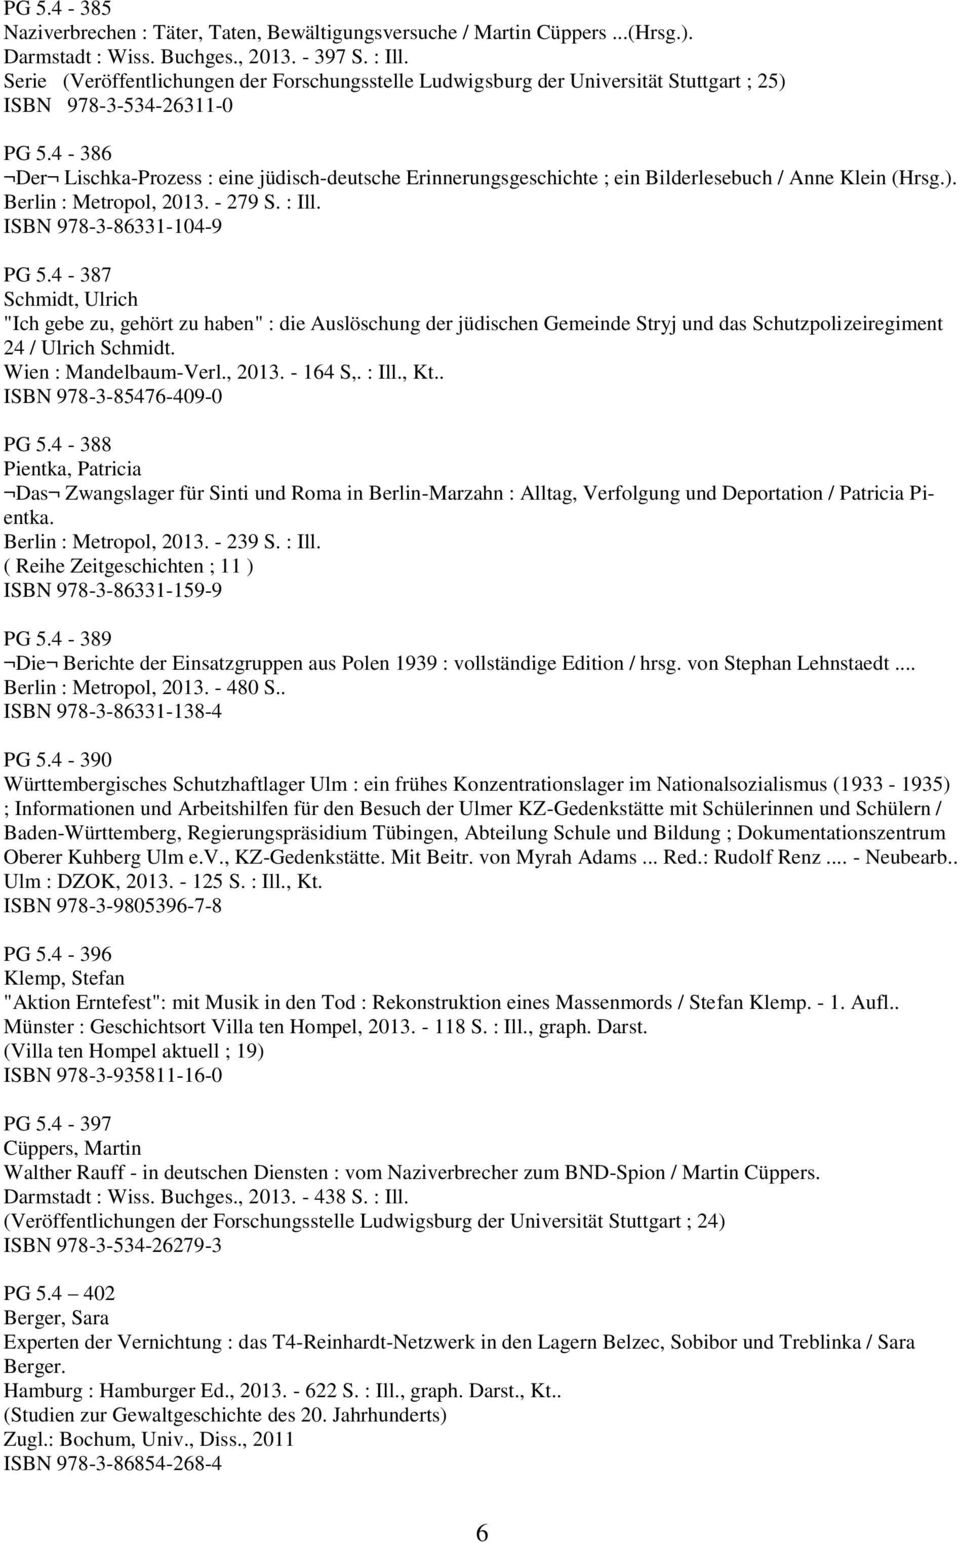 4-386 Der Lischka-Prozess : eine jüdisch-deutsche Erinnerungsgeschichte ; ein Bilderlesebuch / Anne Klein (Hrsg.). Berlin : Metropol, 2013. - 279 S. : Ill. ISBN 978-3-86331-104-9 PG 5.